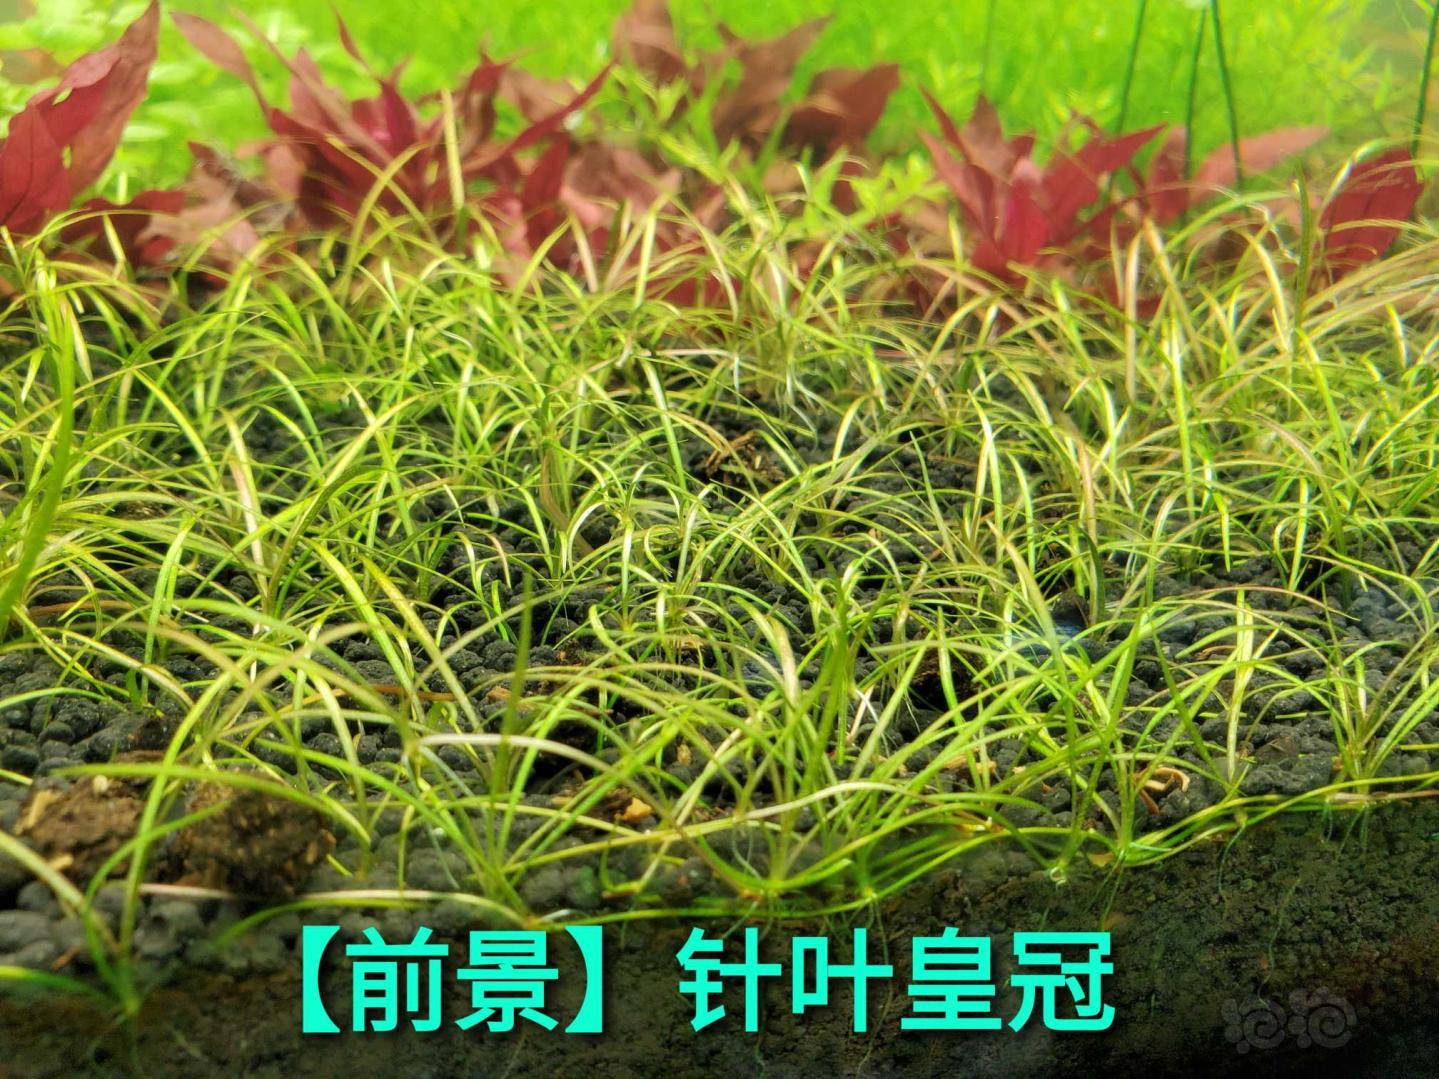 【水草】出 泰国水剑  墨西哥大莎草 红泽藻  新叶底红细叶铁黑幕蕨各种造景水草-图9